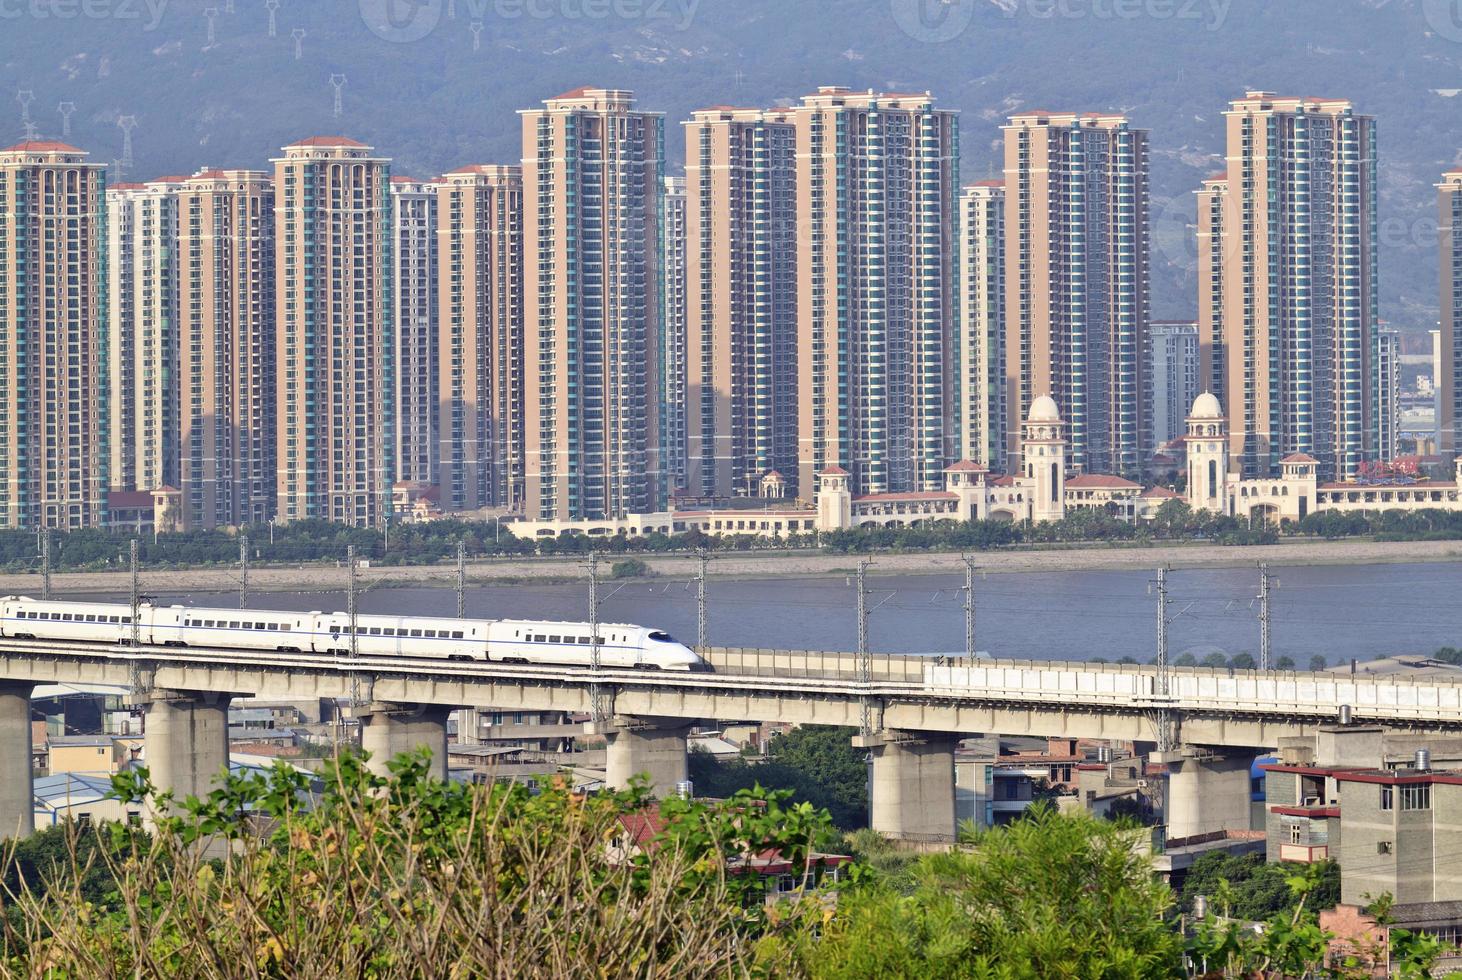 supertrain sul ponte di cemento, sulla costa sud-orientale della Cina foto